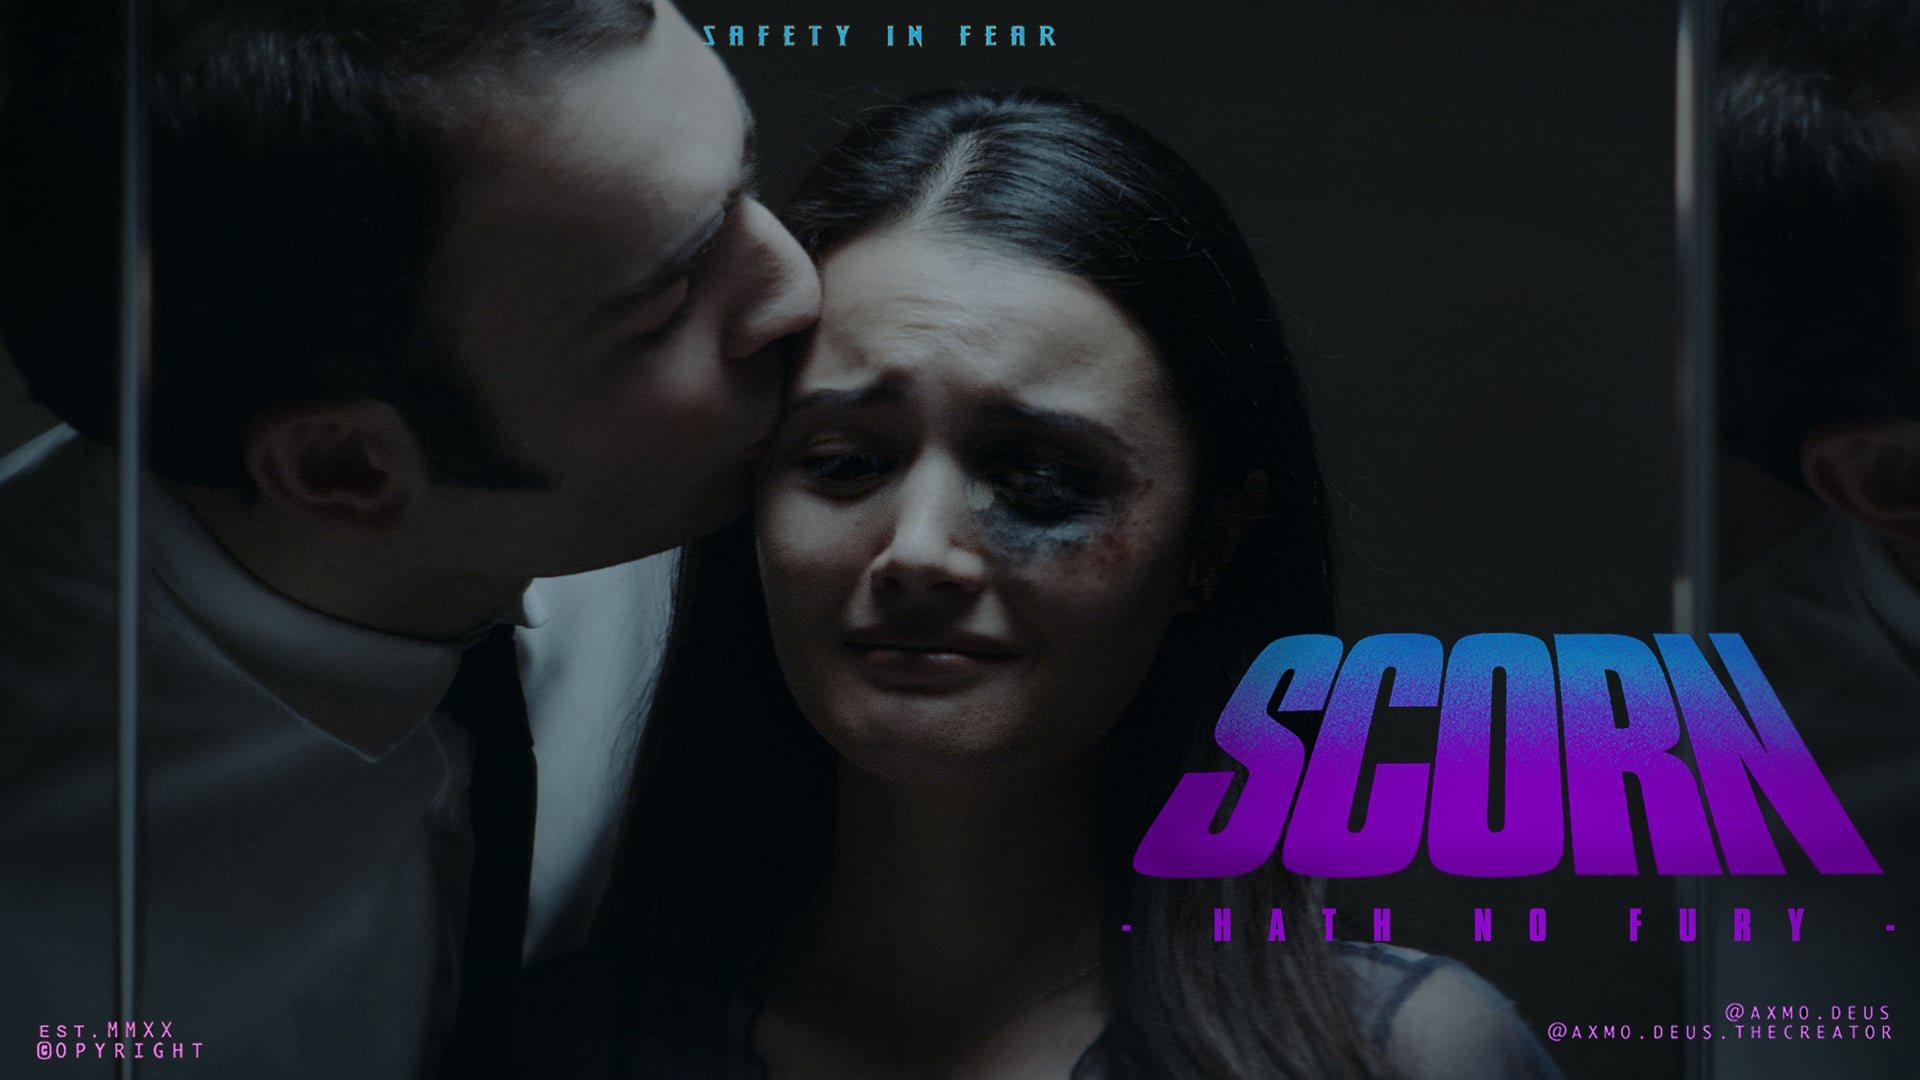 Scorn - Hath No Fury (Official Film)